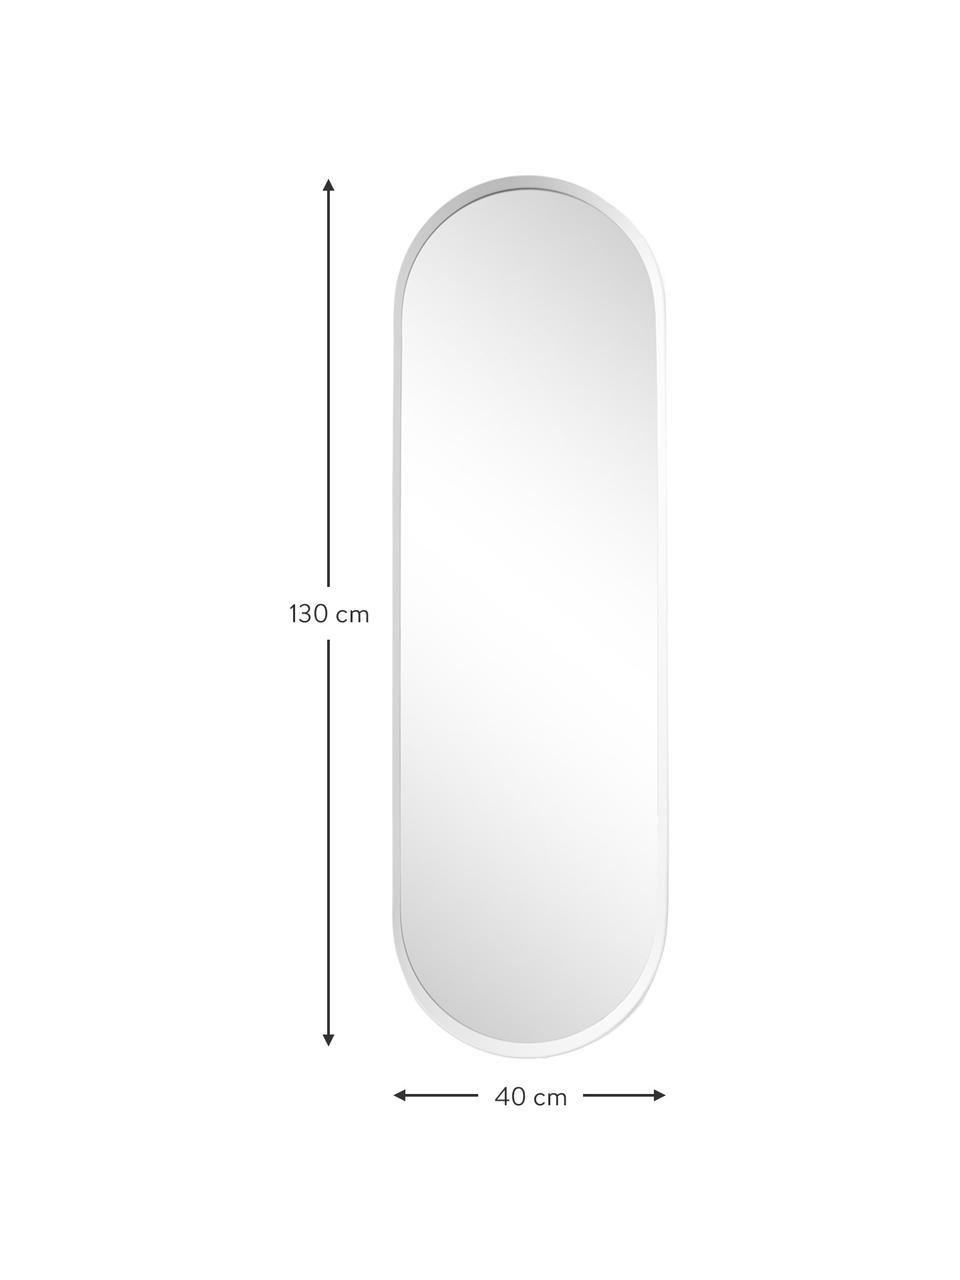 Ovaler Wandspiegel Norm mit Aluminiumrahmen, Rahmen: Aluminium, pulverbeschich, Spiegelfläche: Spiegelglas, Weiß, B 40 x H 130 cm